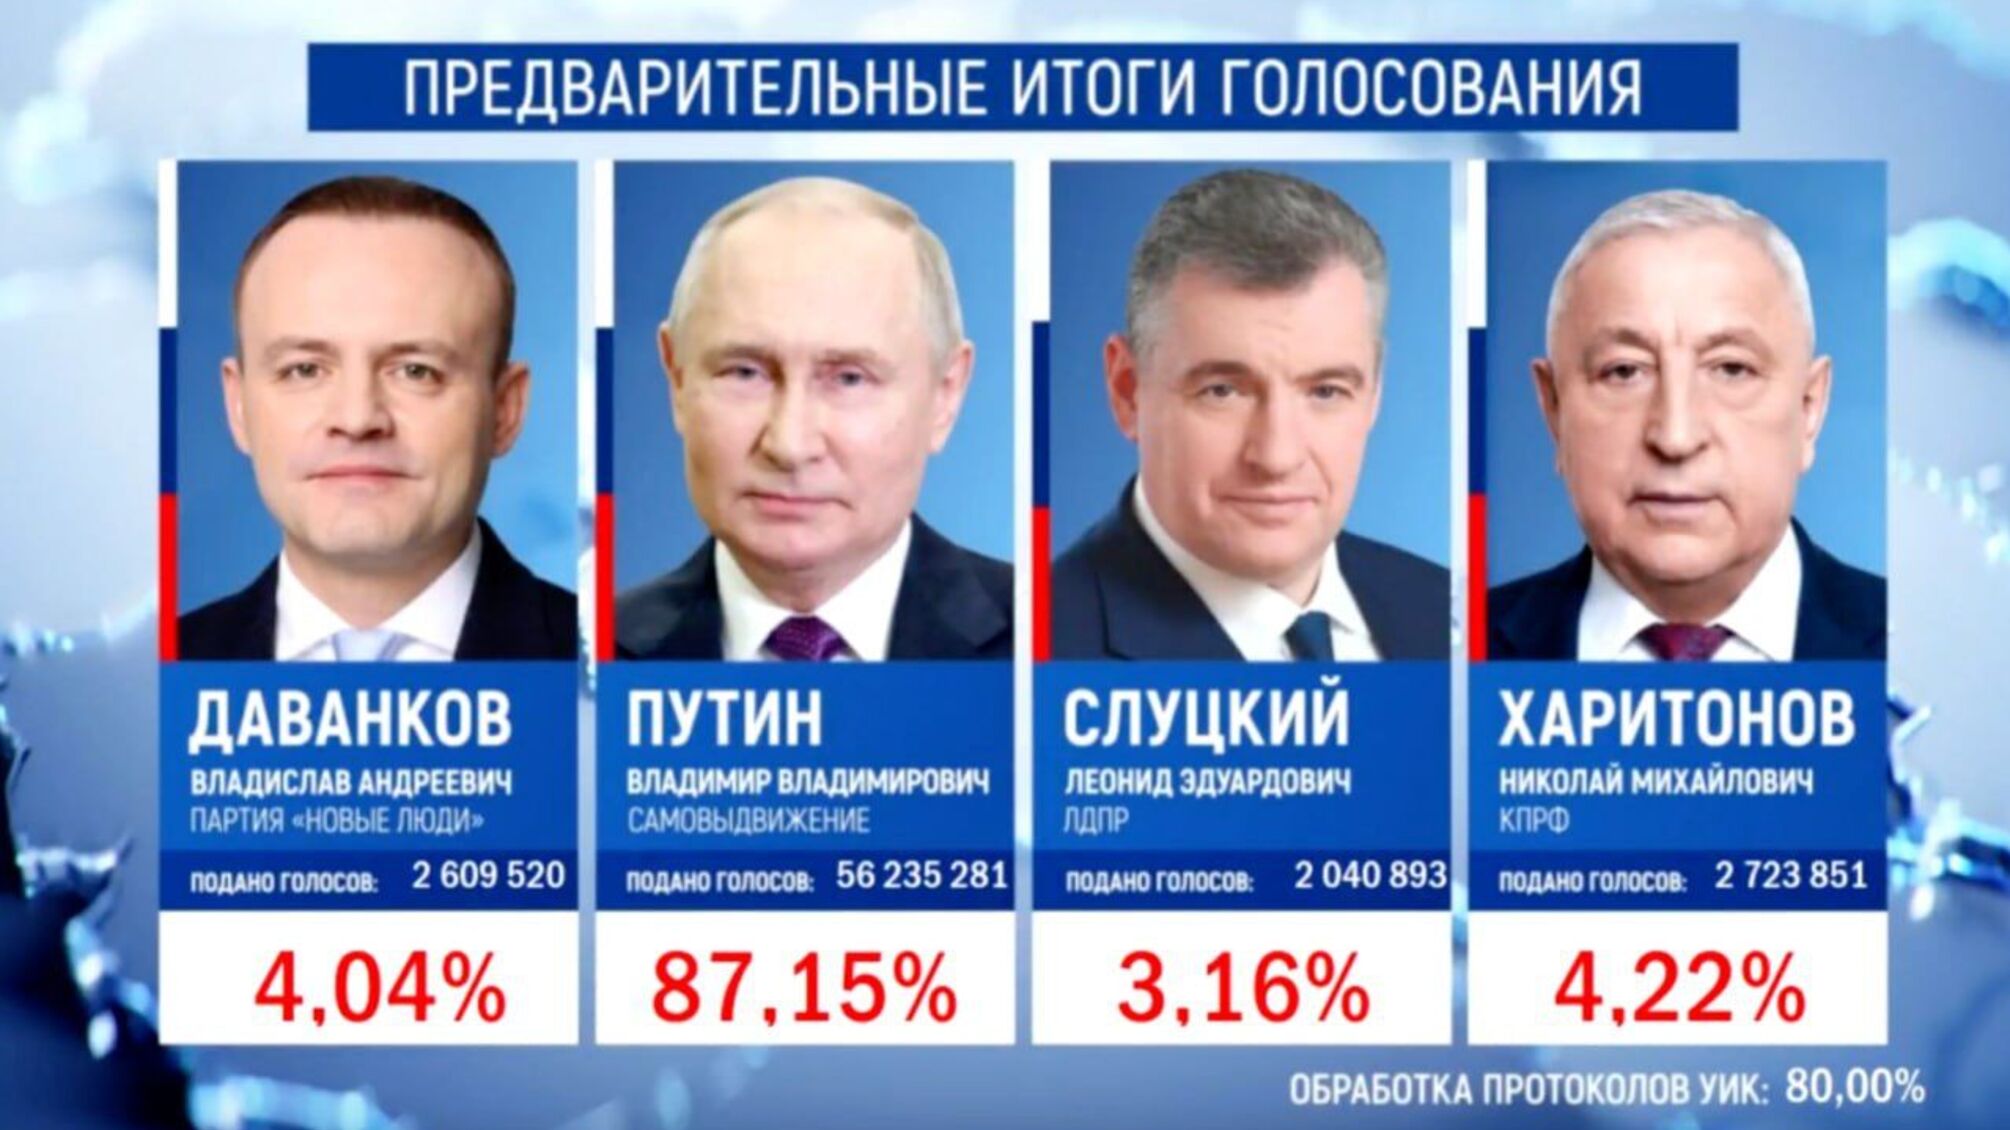  Путін набрав 85,13% голосів після опрацювання 100% протоколів на виборах, – росЗМІ